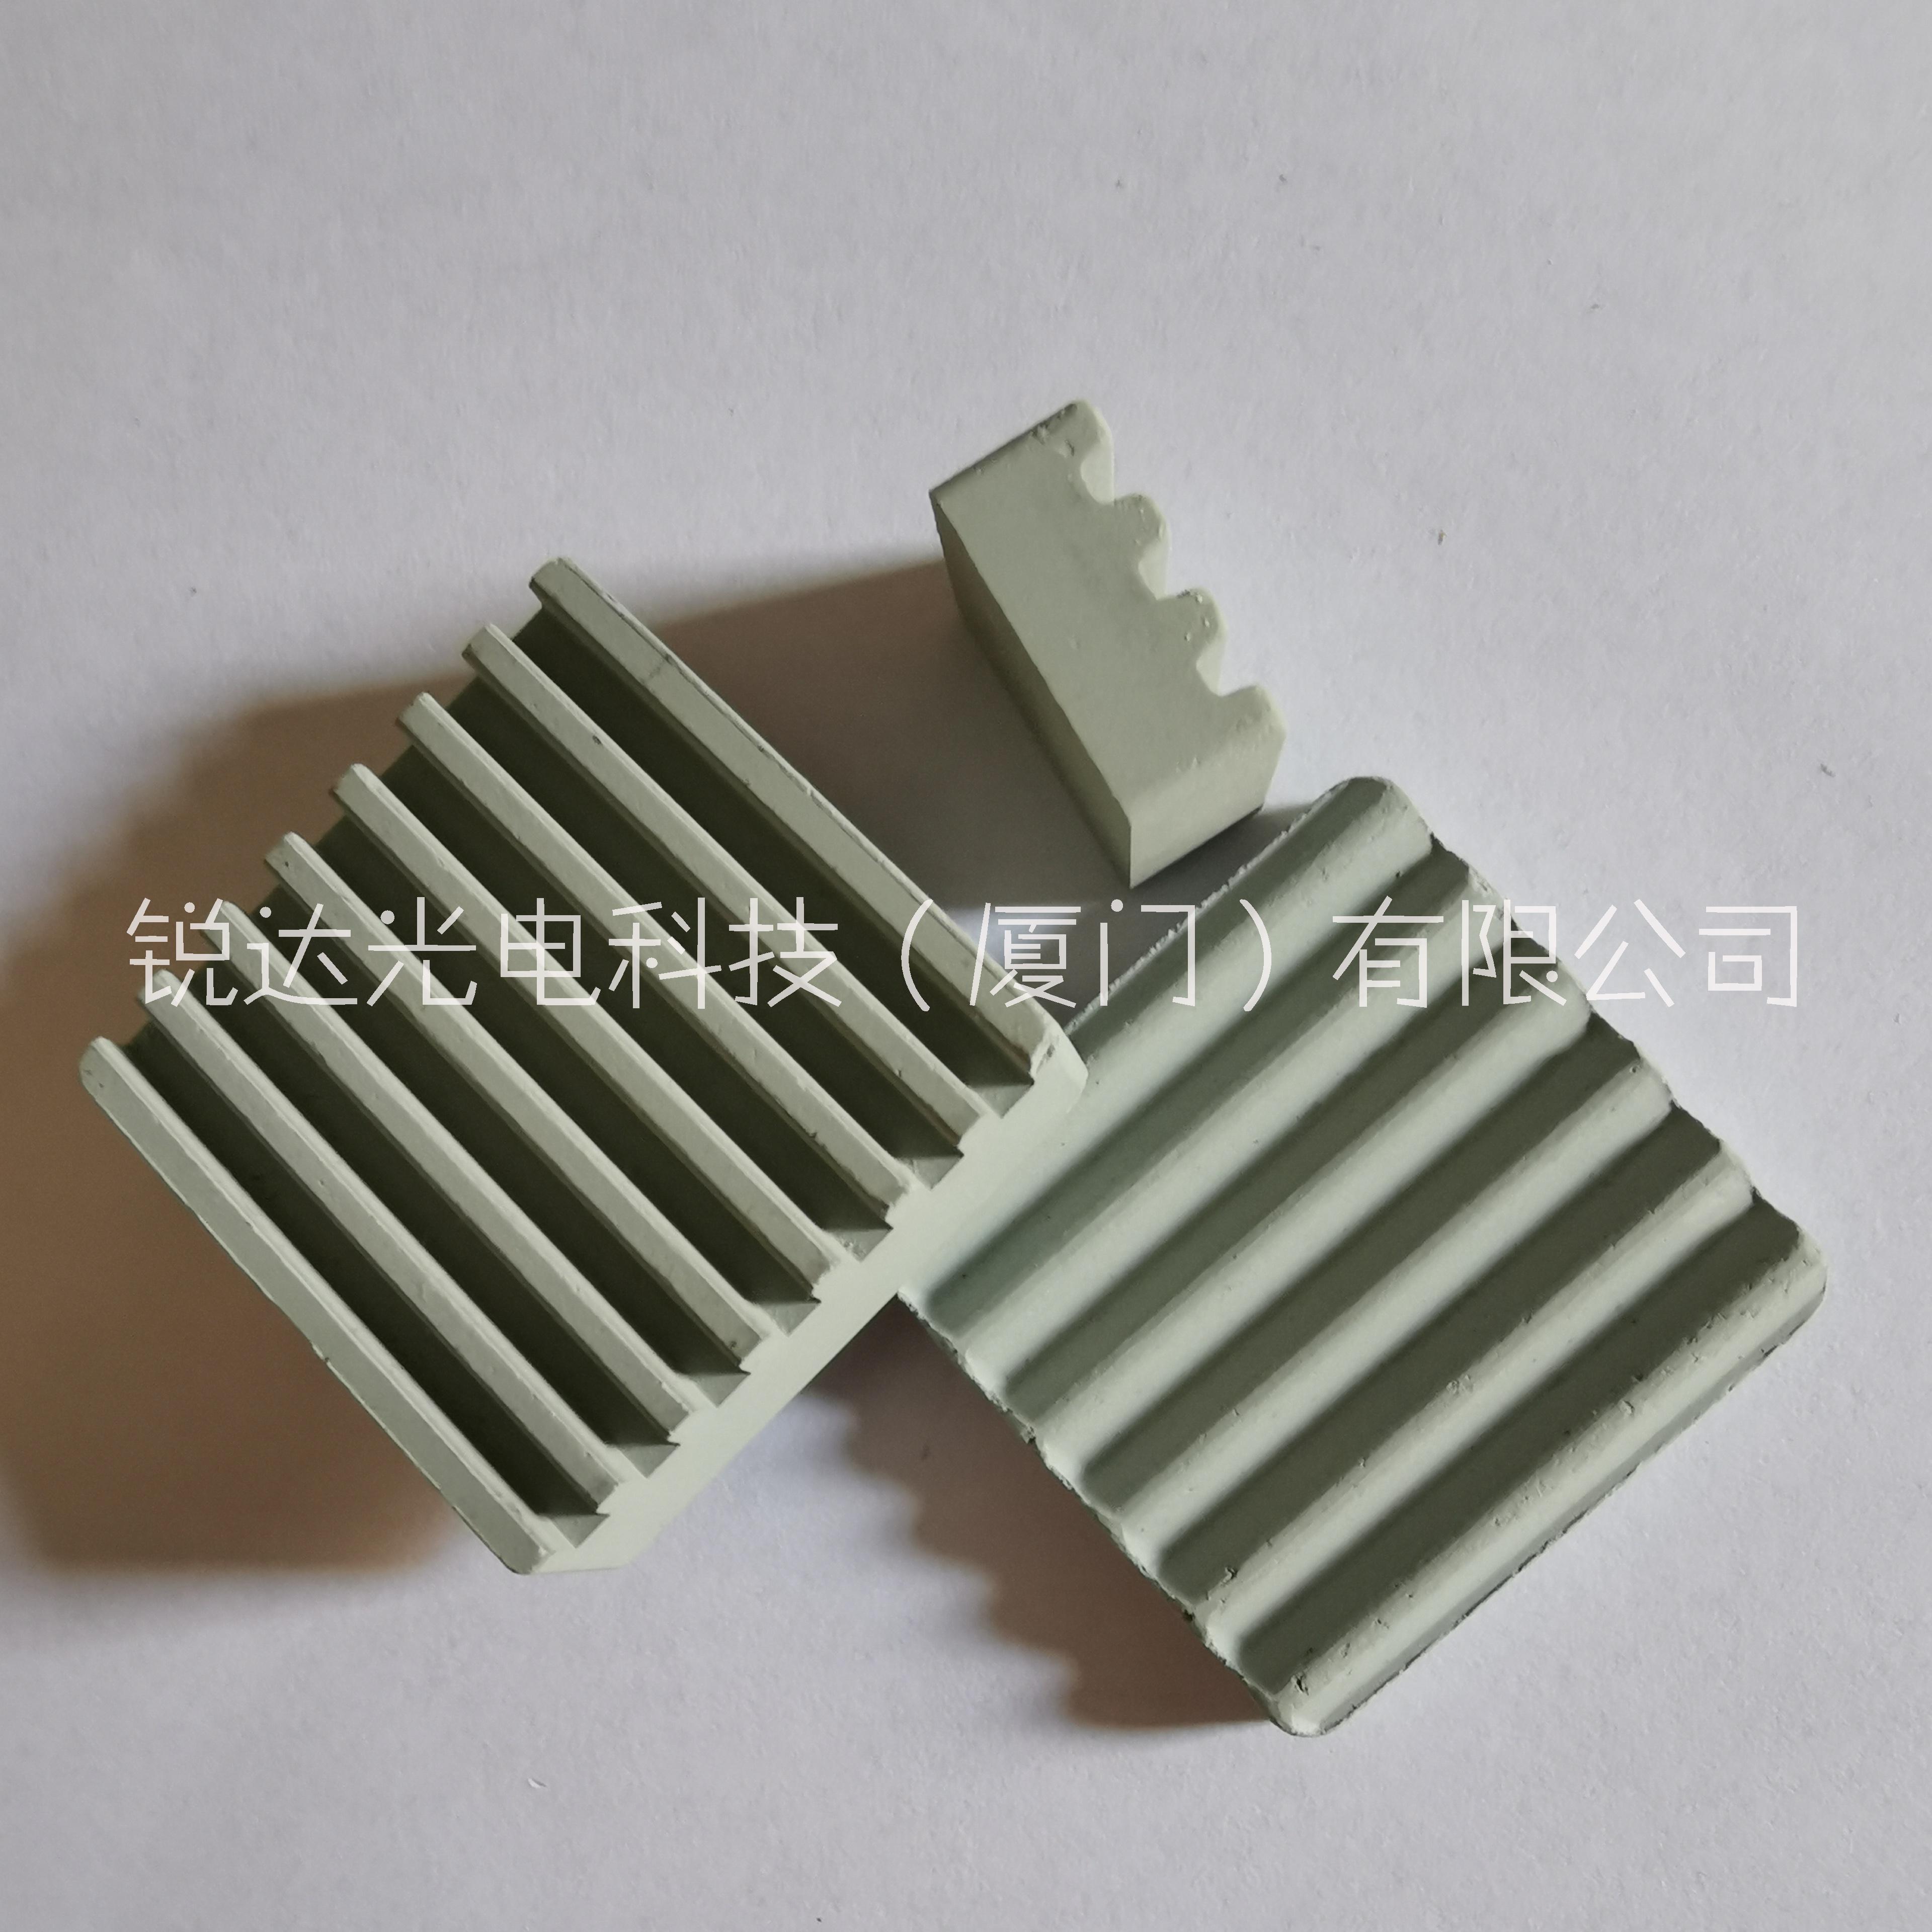 深圳电视盒子陶瓷散热片 专业的陶瓷散热片供应商 18649677688图片